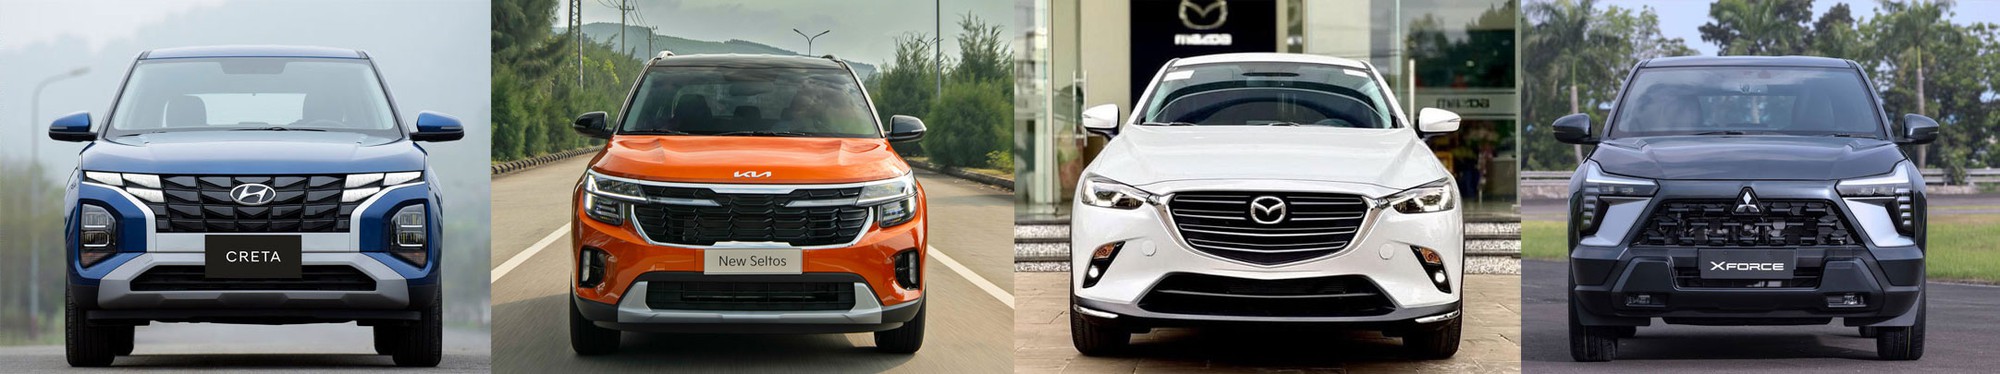 Đồng giá 599 triệu đồng: Hyundai Creta, KIA Seltos, Mazda CX-3 hay Mitsubishi Xforce sẽ là lựa chọn của bạn?- Ảnh 3.